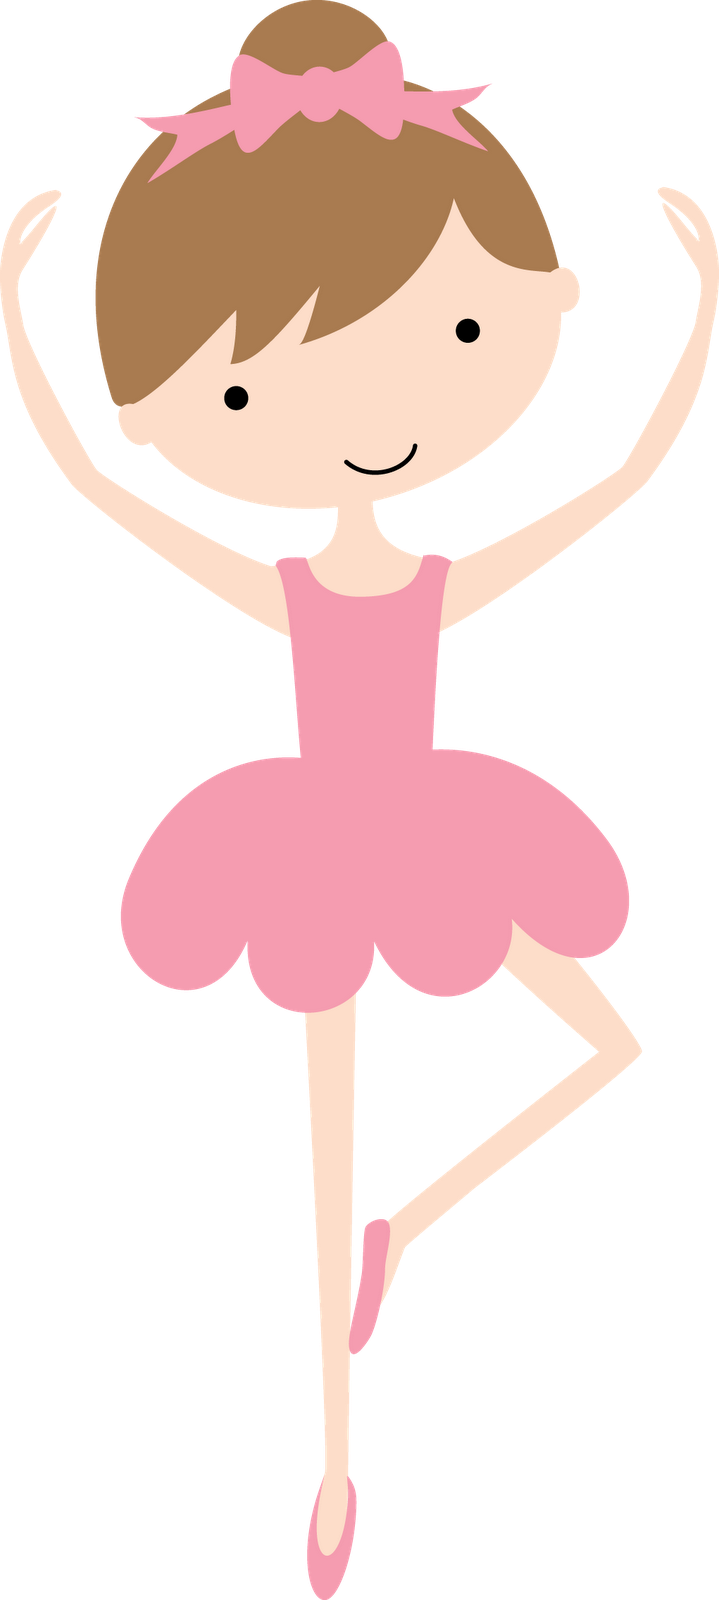 Cartoon Ballerina Posing.png